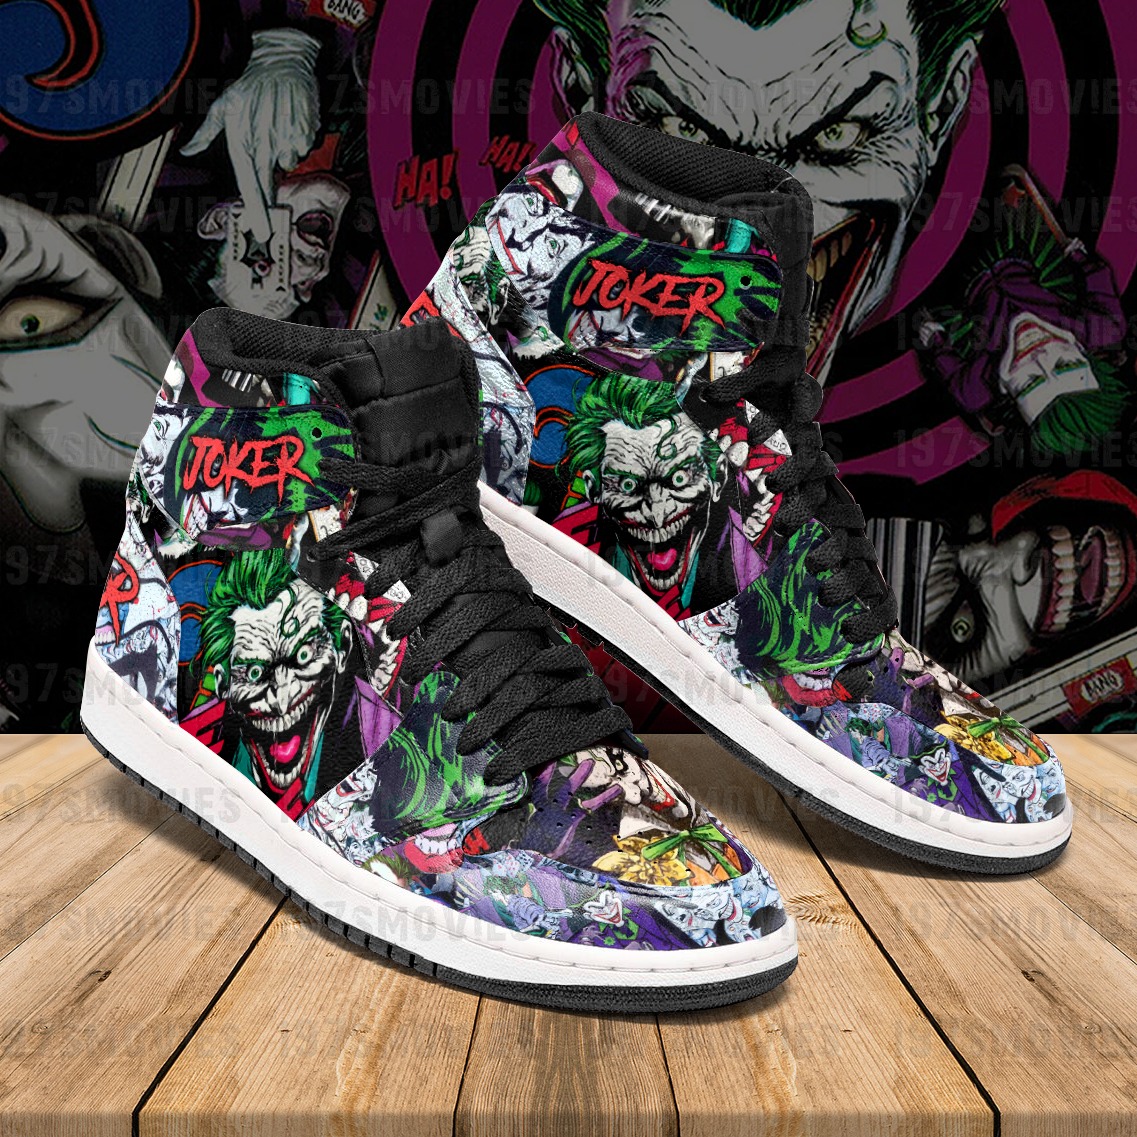 Joker JD Sneaker High Top Shoes – Hothot 020921